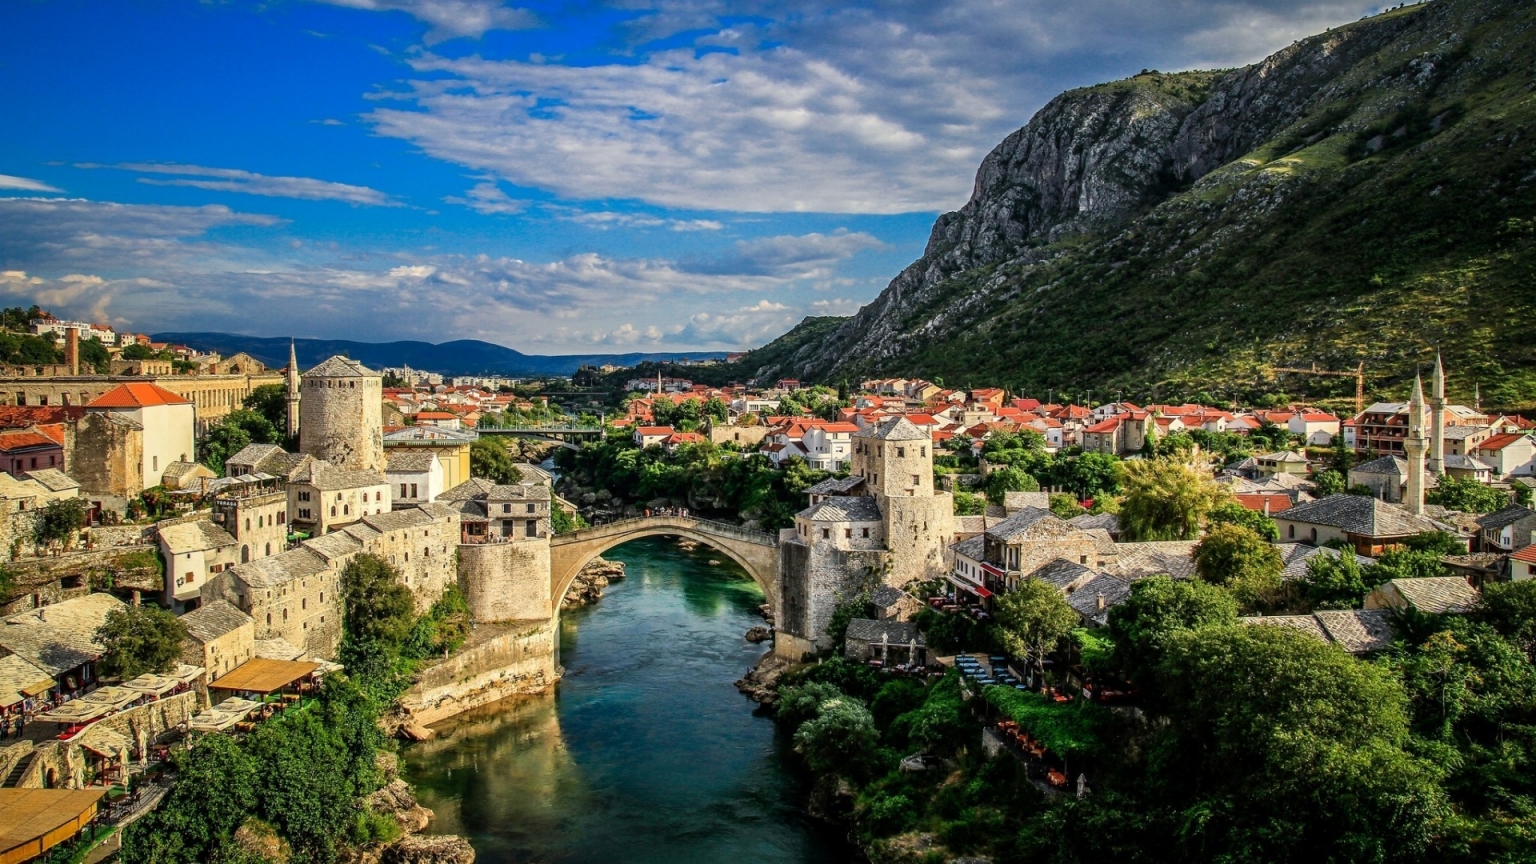 Mostar Bosna i Hercegovina for 1536 x 864 HDTV resolution